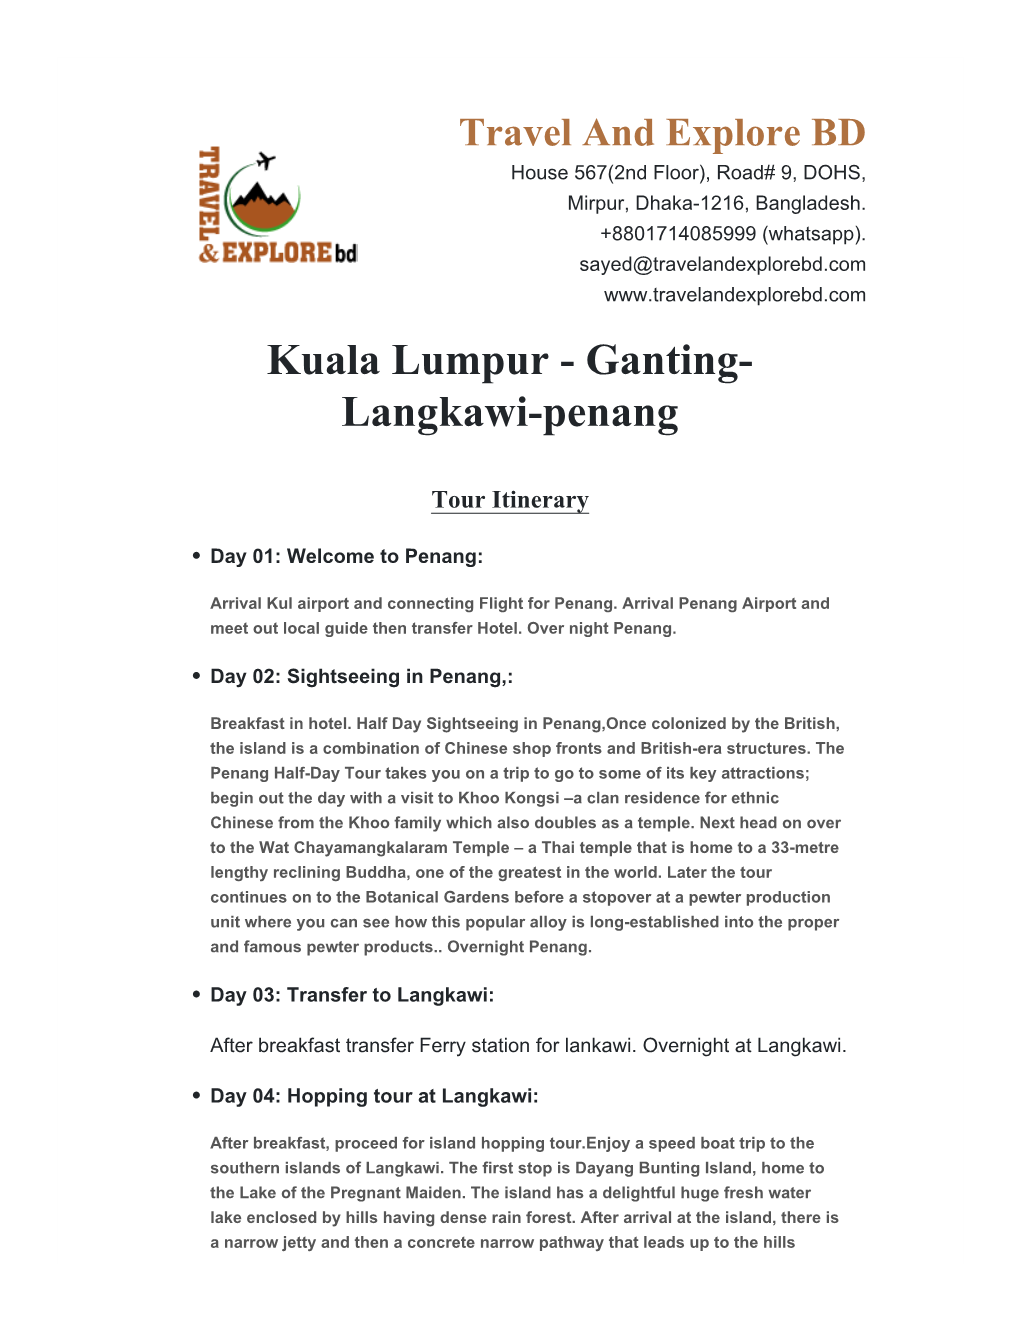 Kuala Lumpur - Ganting- Langkawi-Penang